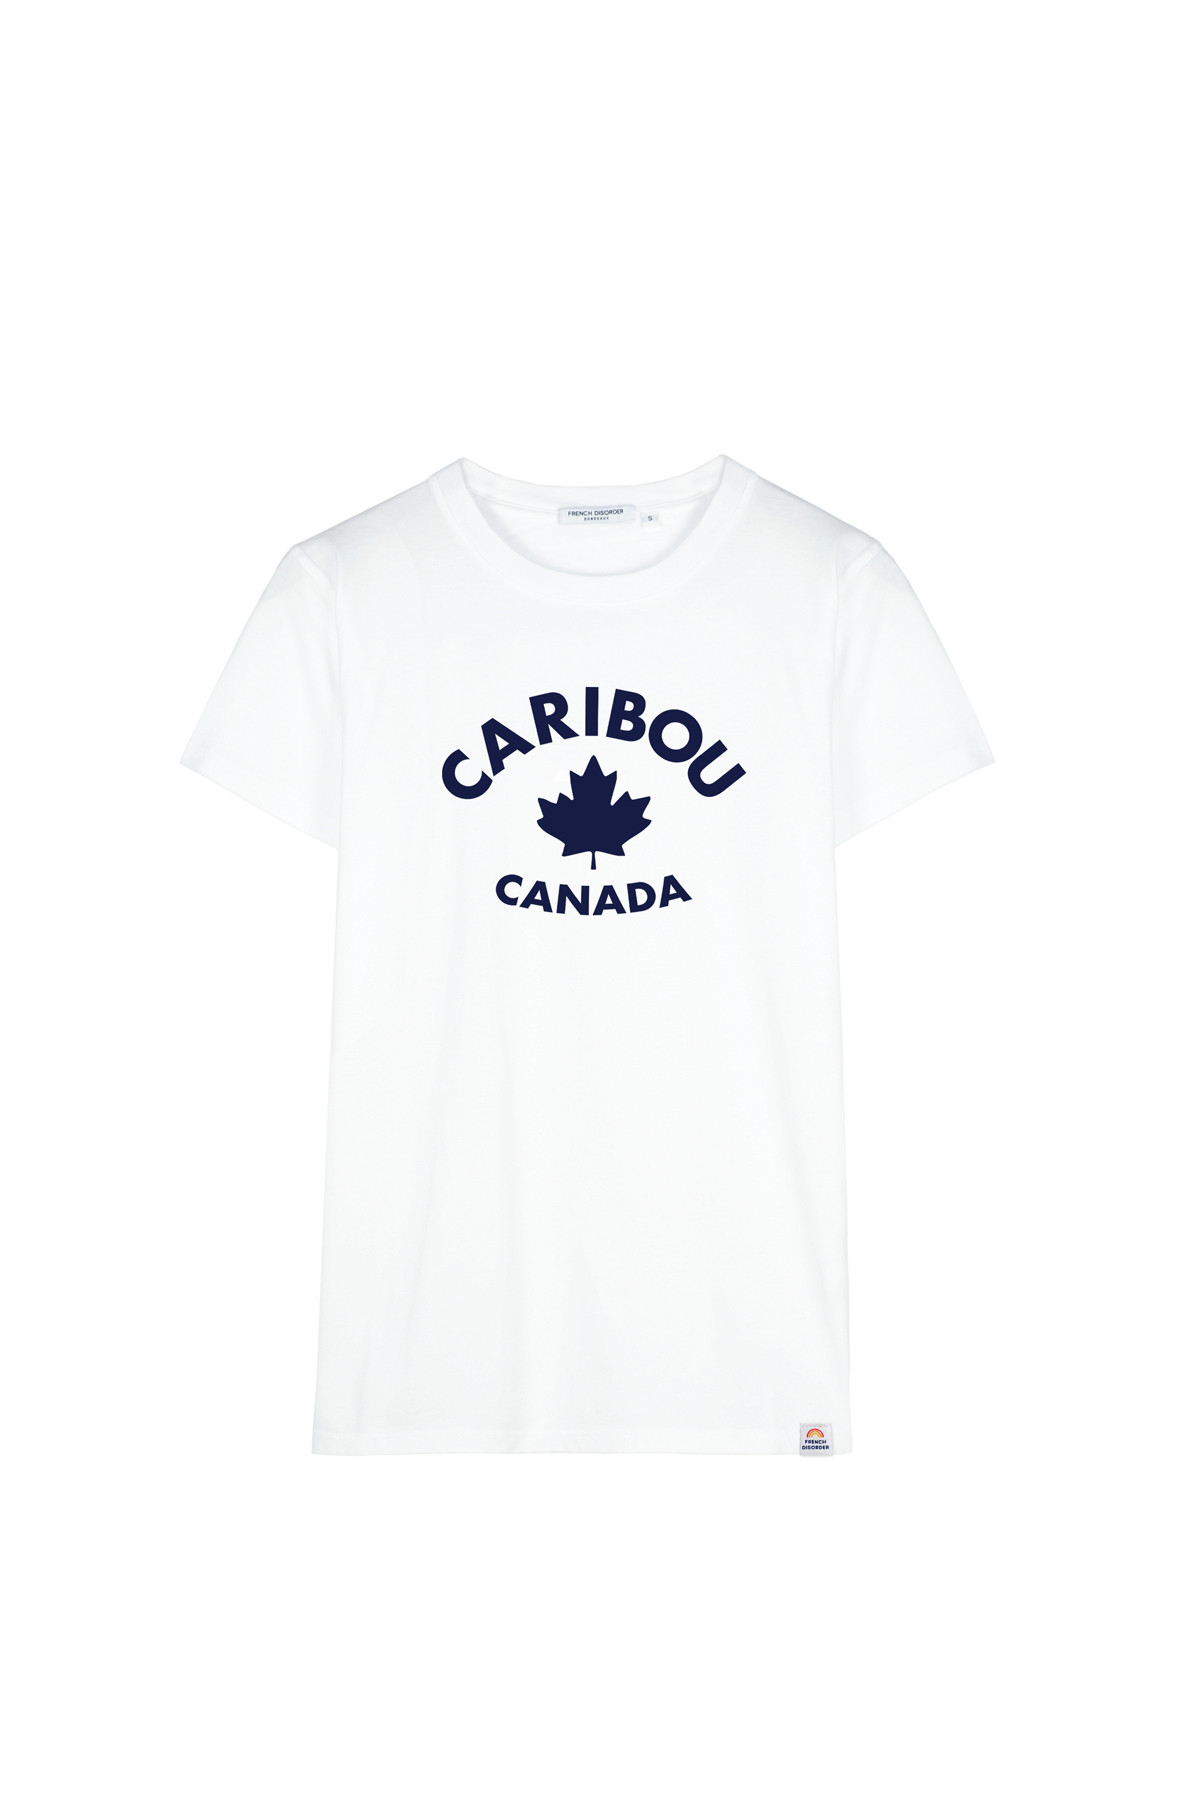 Tshirt CARIBOU